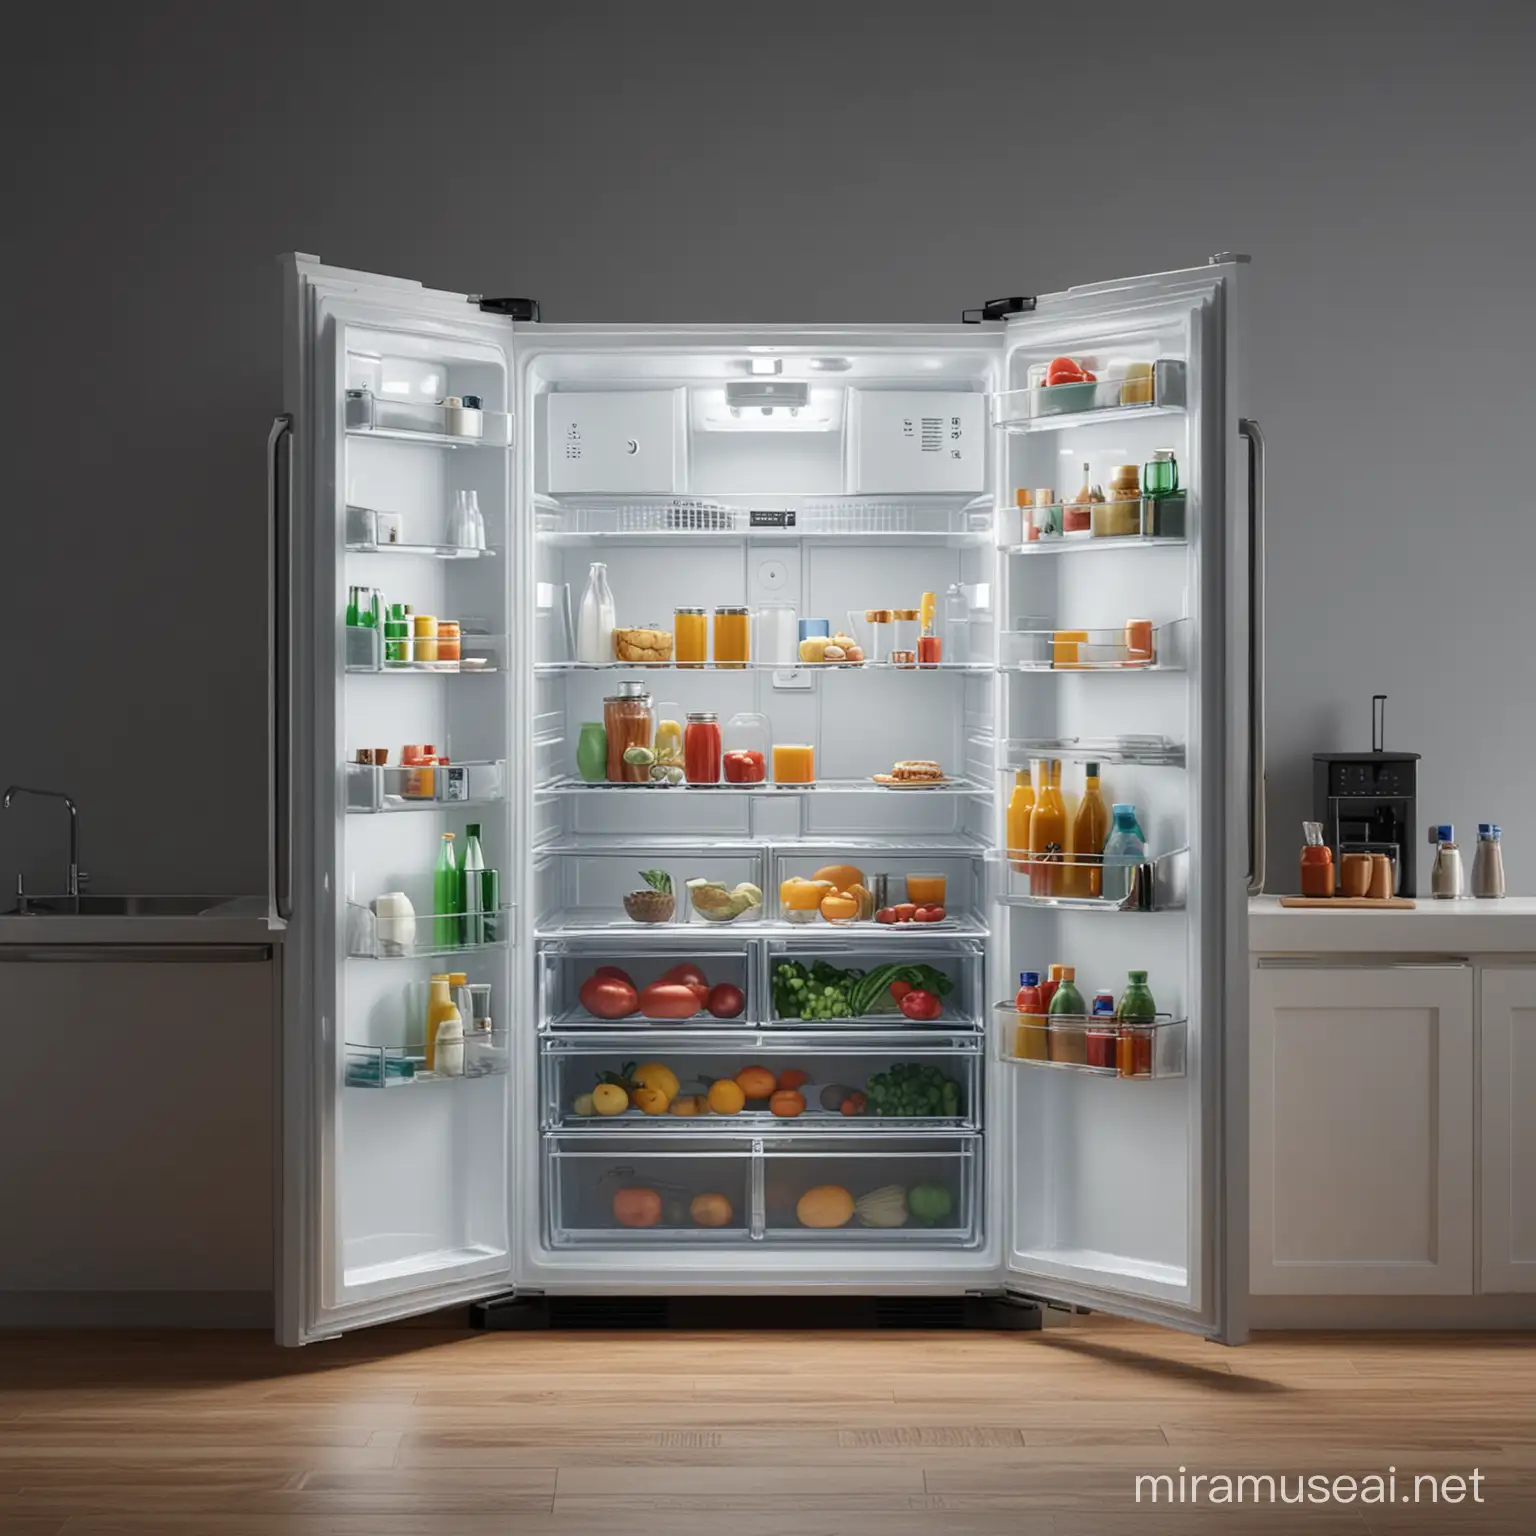 Empty Refrigerator in Night Kitchen